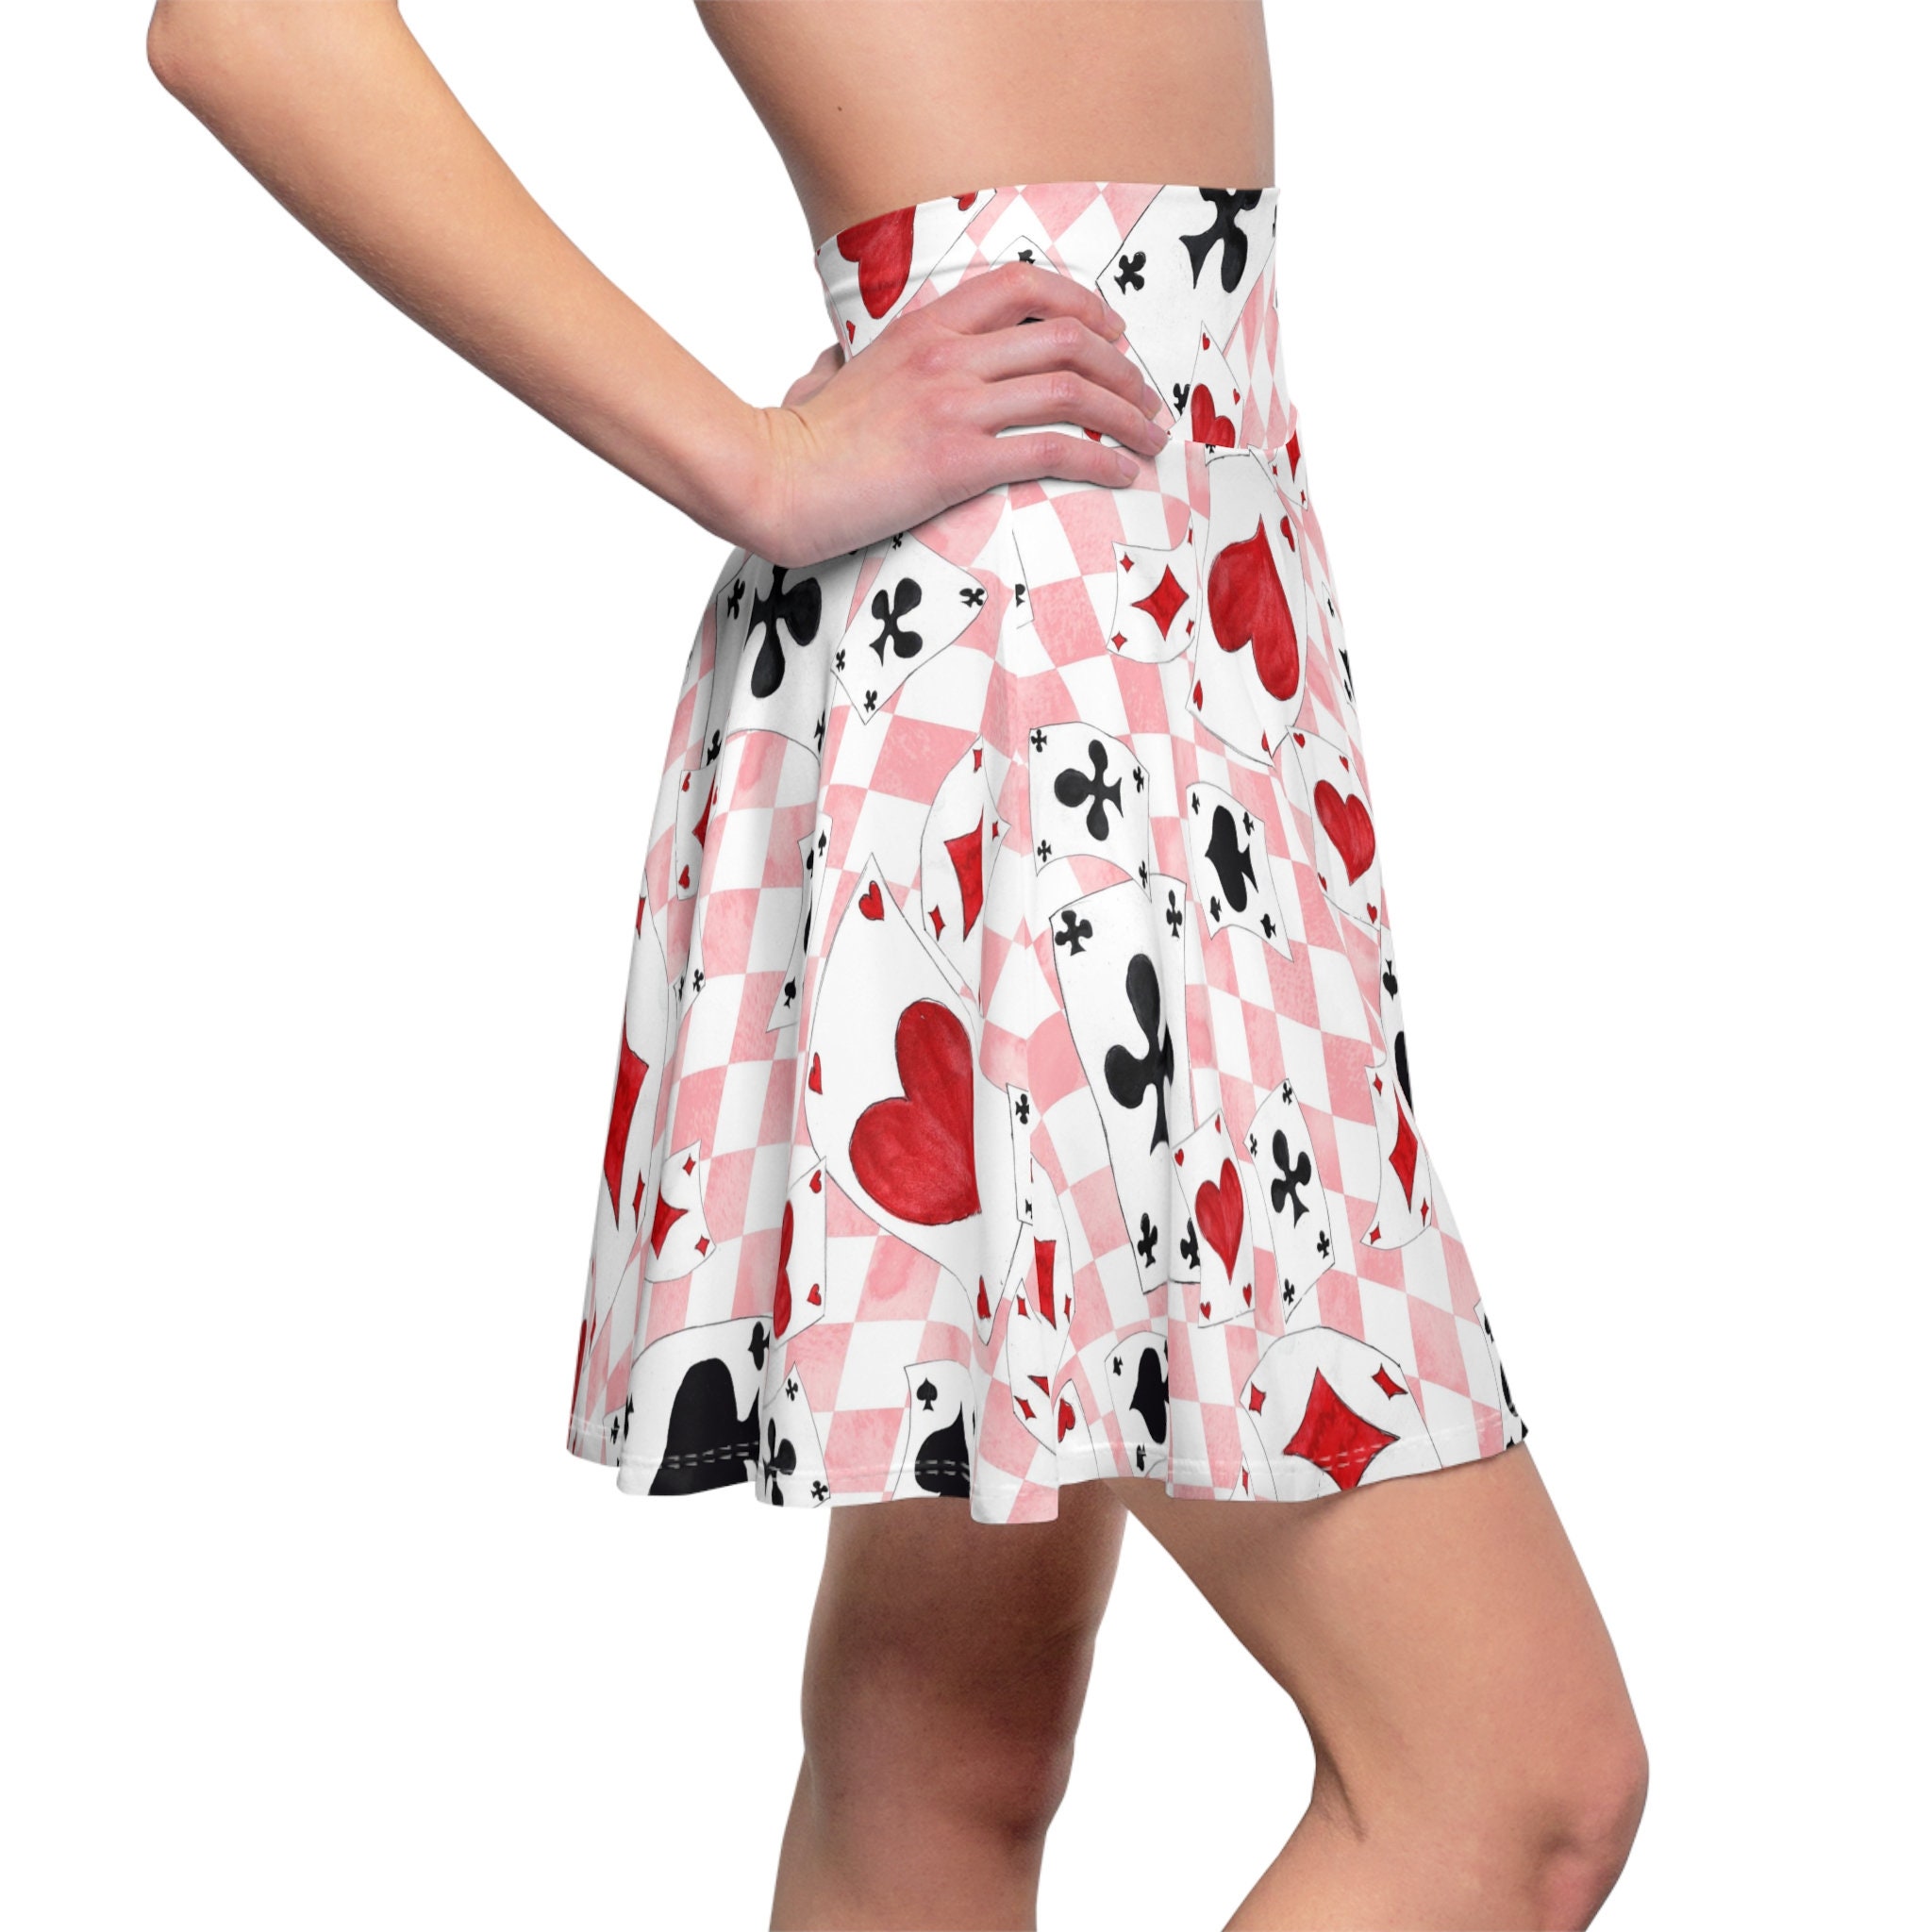 Alice in Wonderland Skater Skirt, Women's Skater Skirt